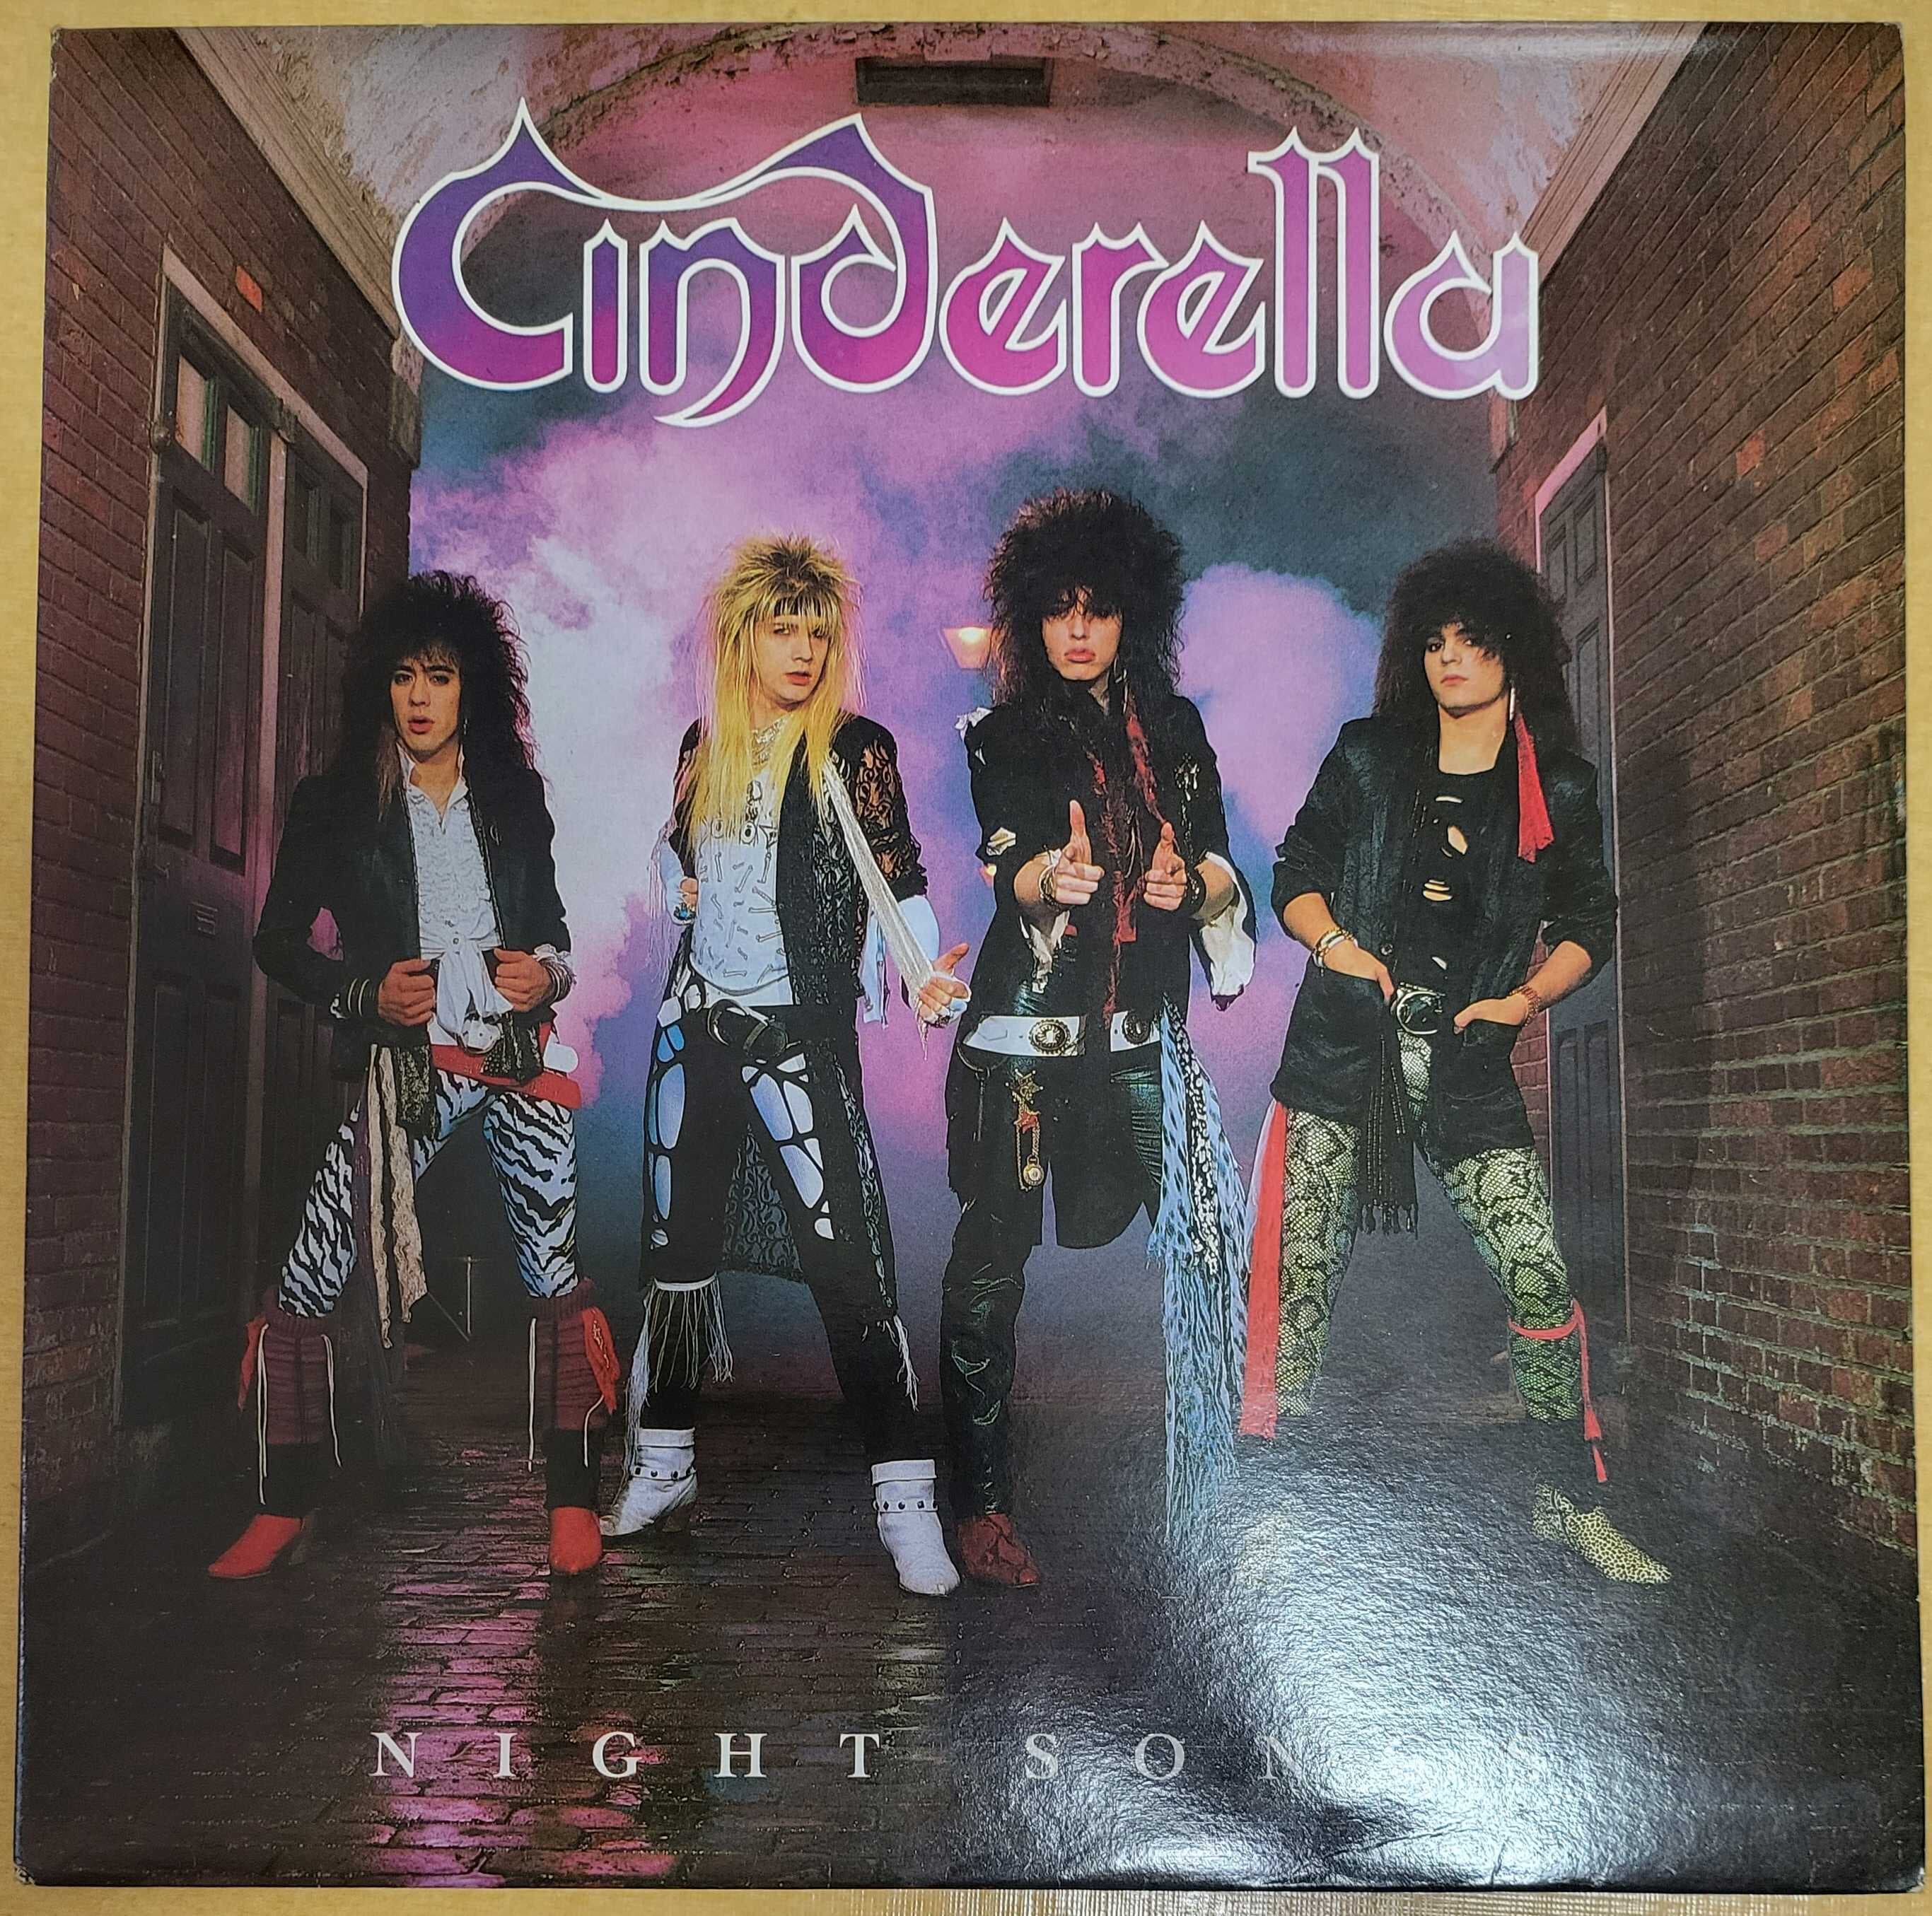 신데렐라 (Cinderella) - Night Songs (개봉, LP)